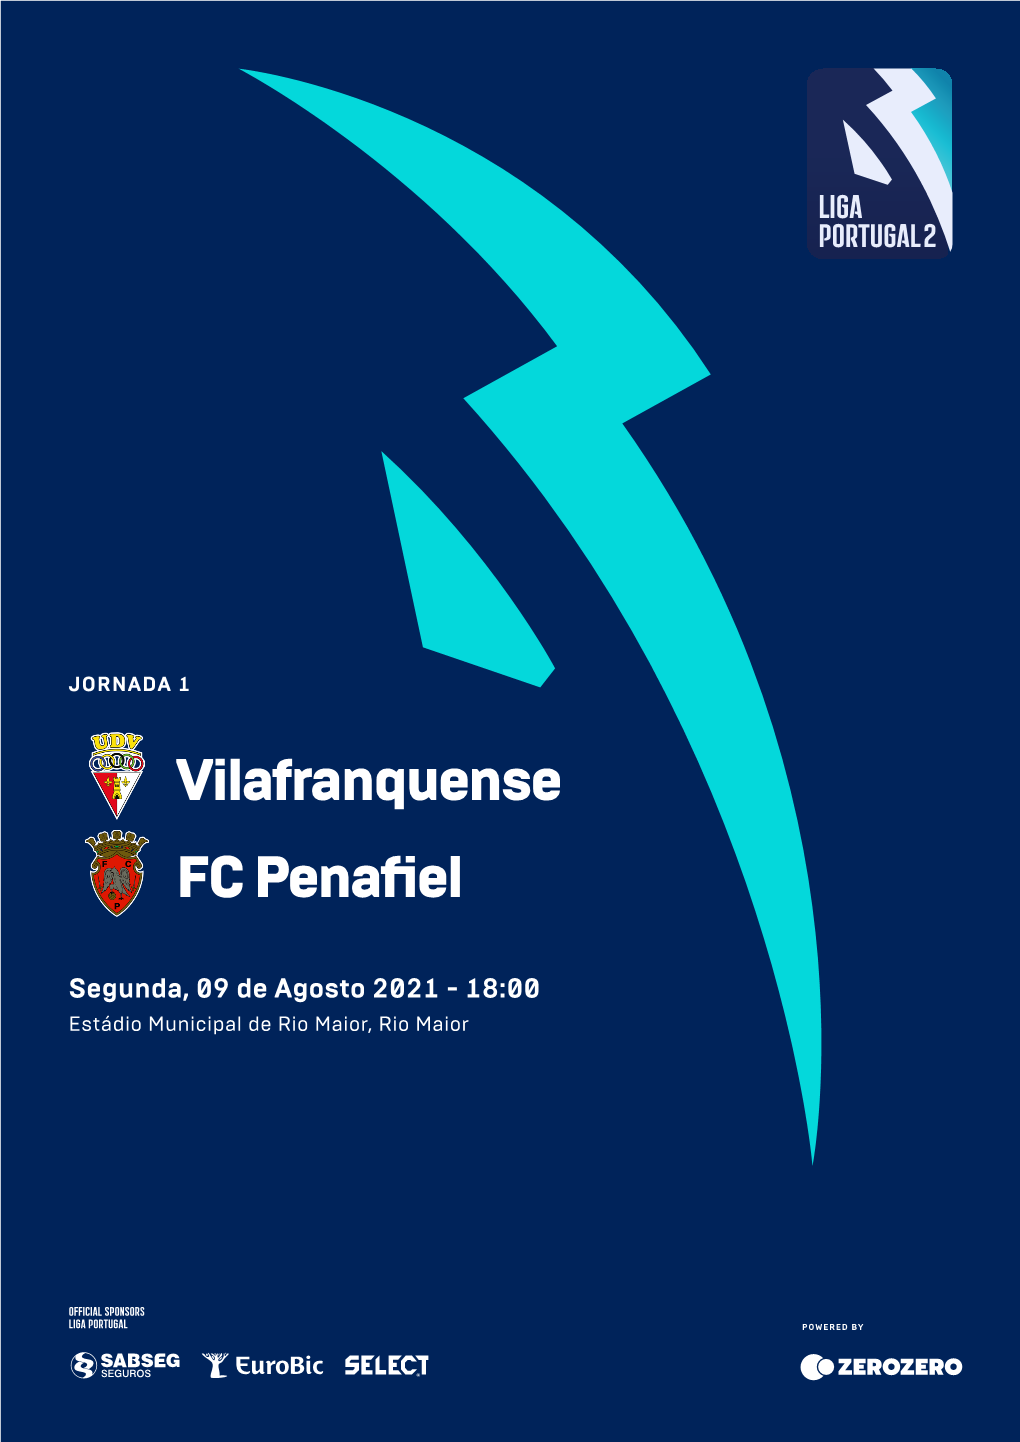 Vilafranquense FC Penafiel